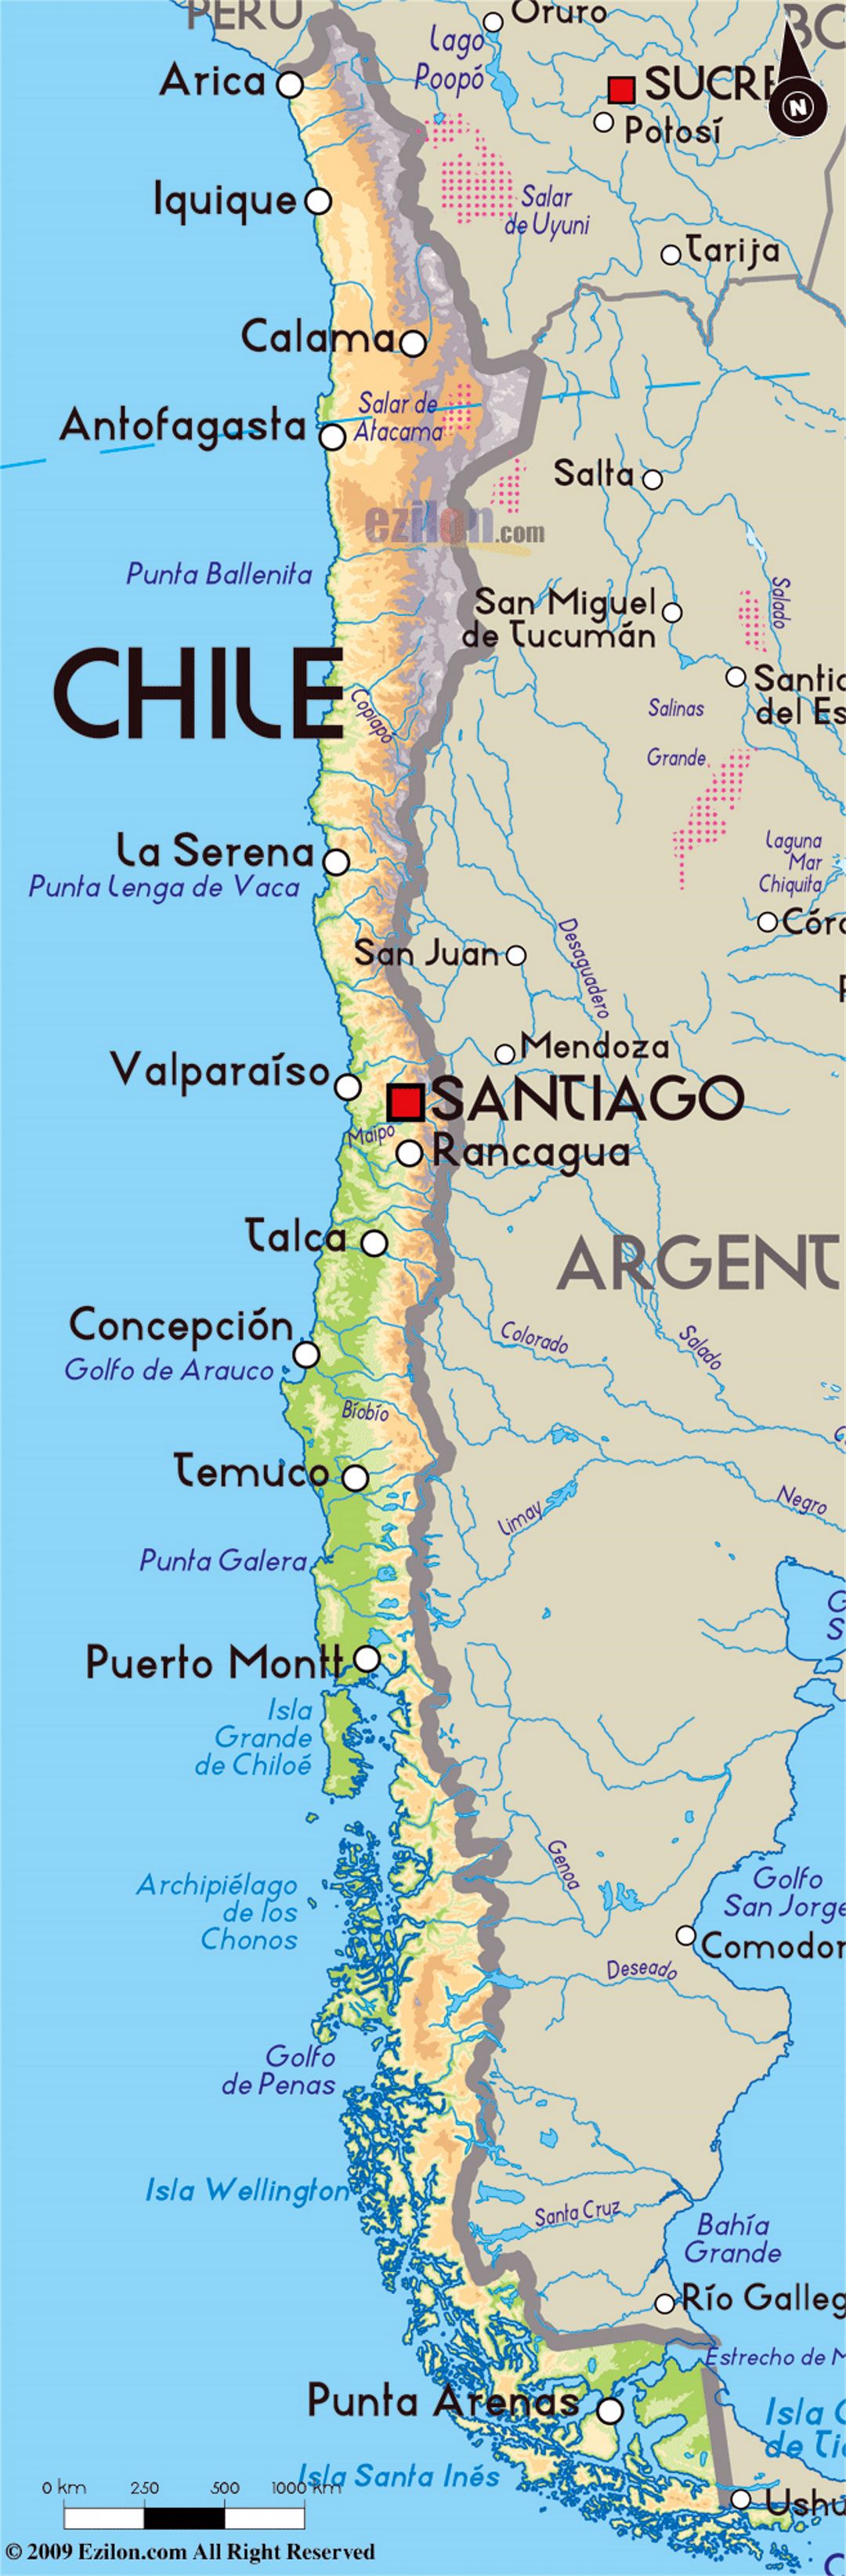 Подробная физическая карта Чили с крупными городами